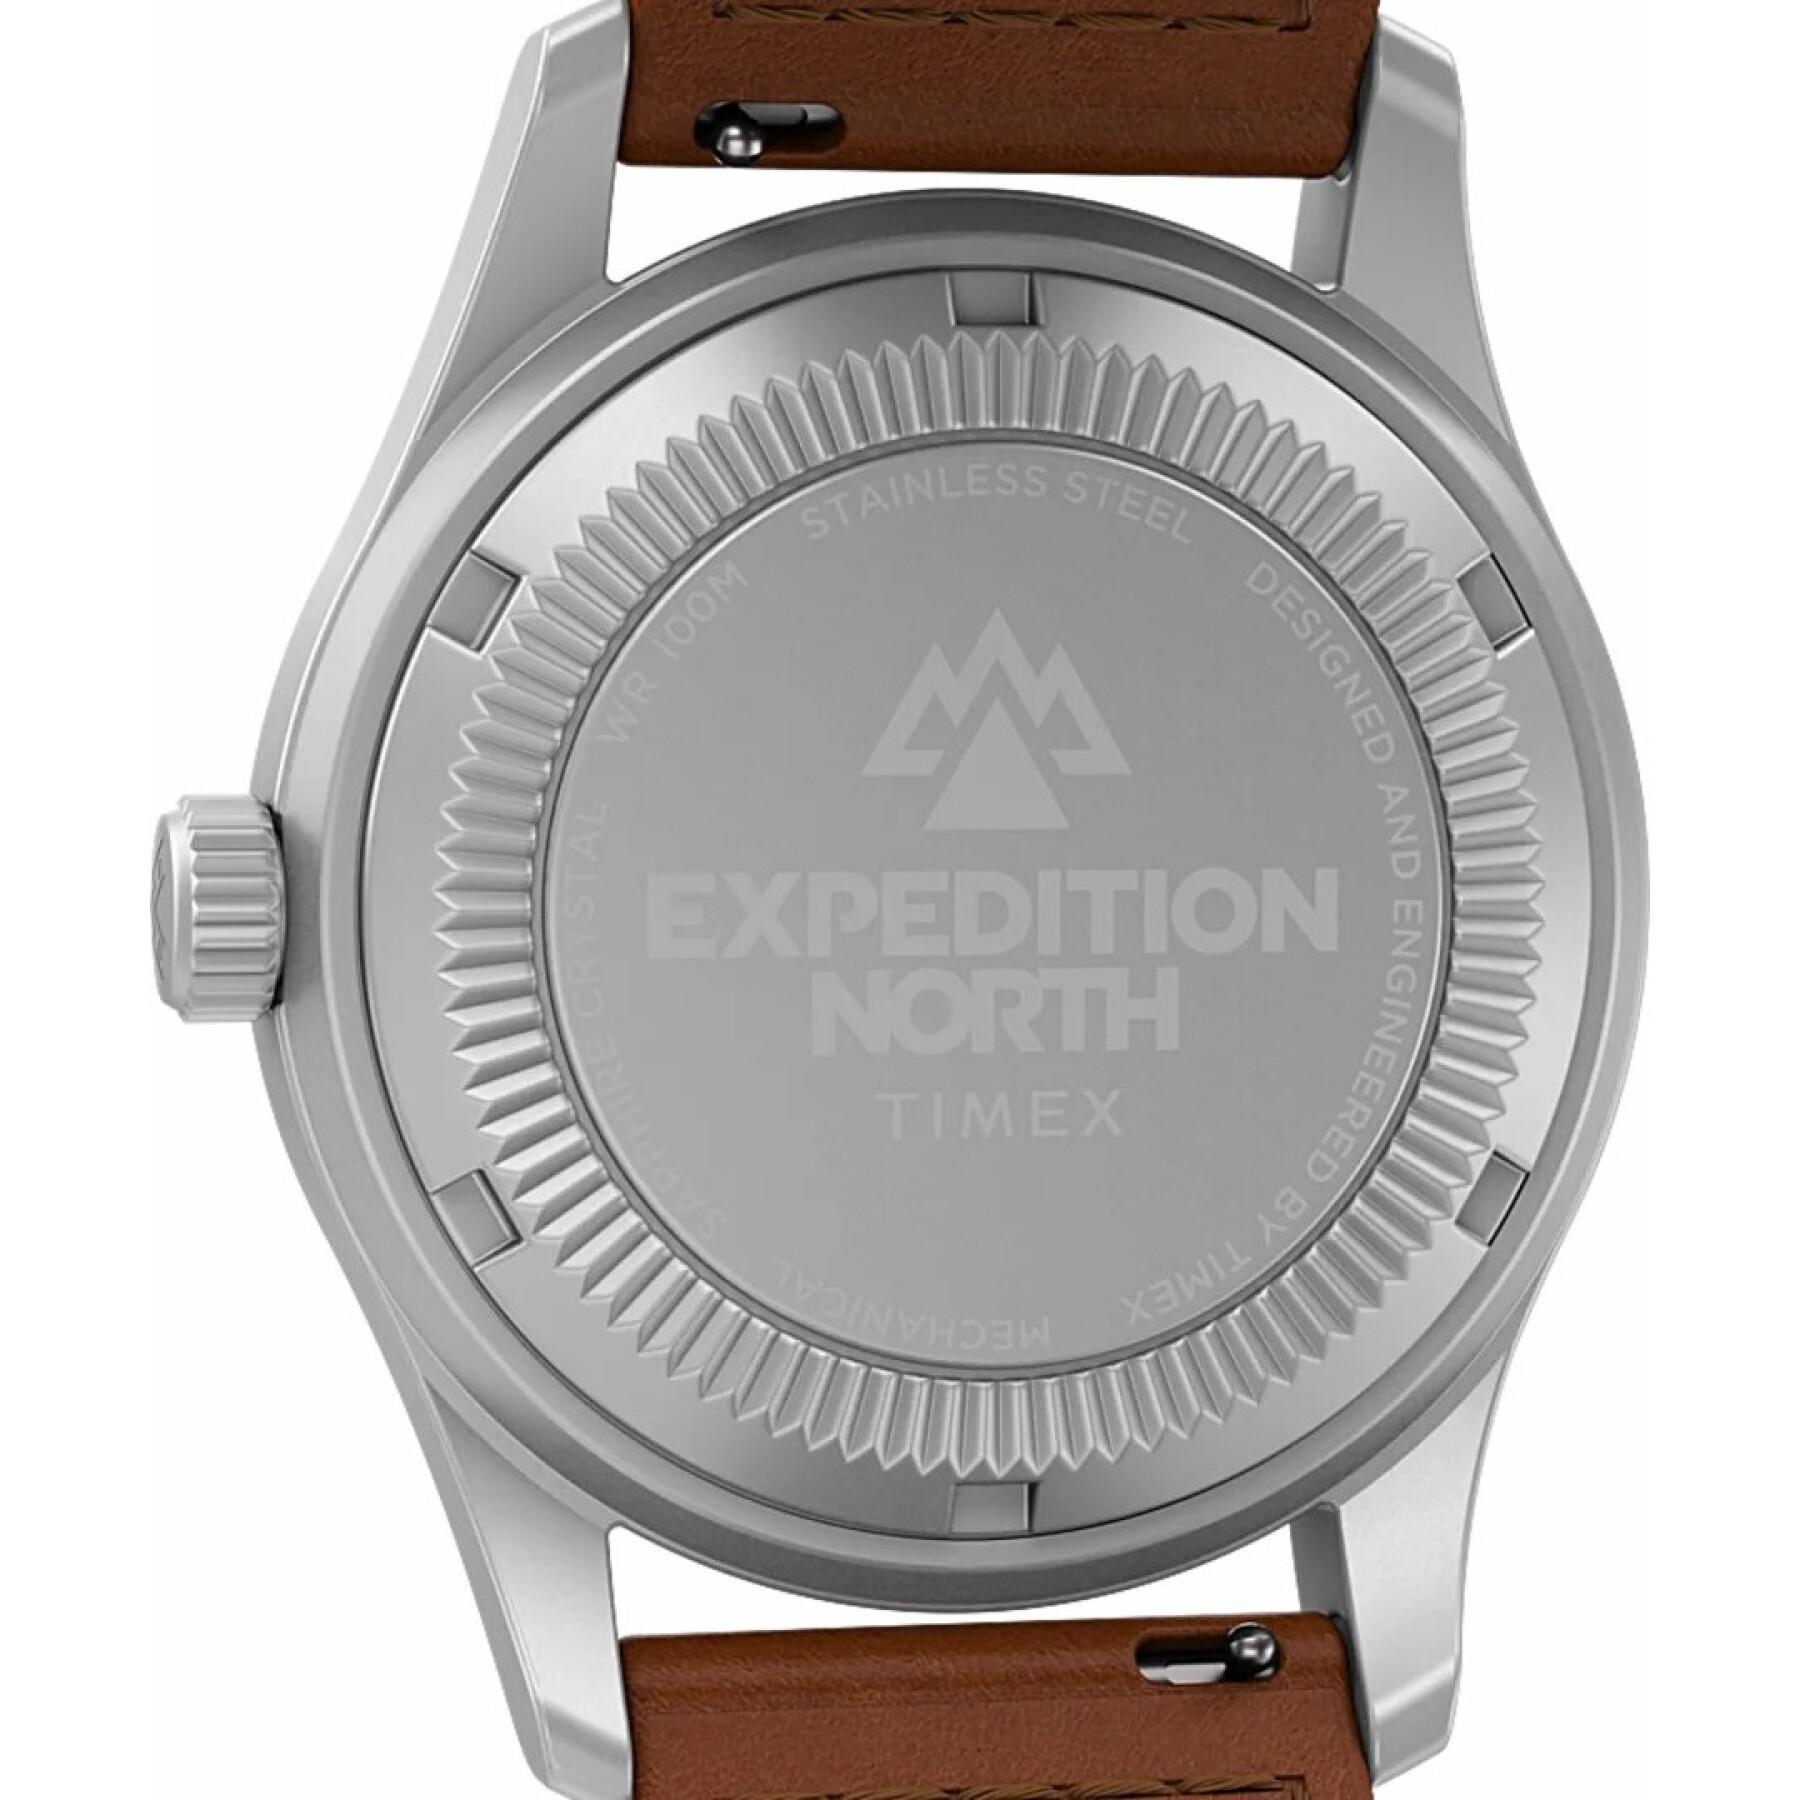 Guarda Timex Expedition North Titanium Automatic